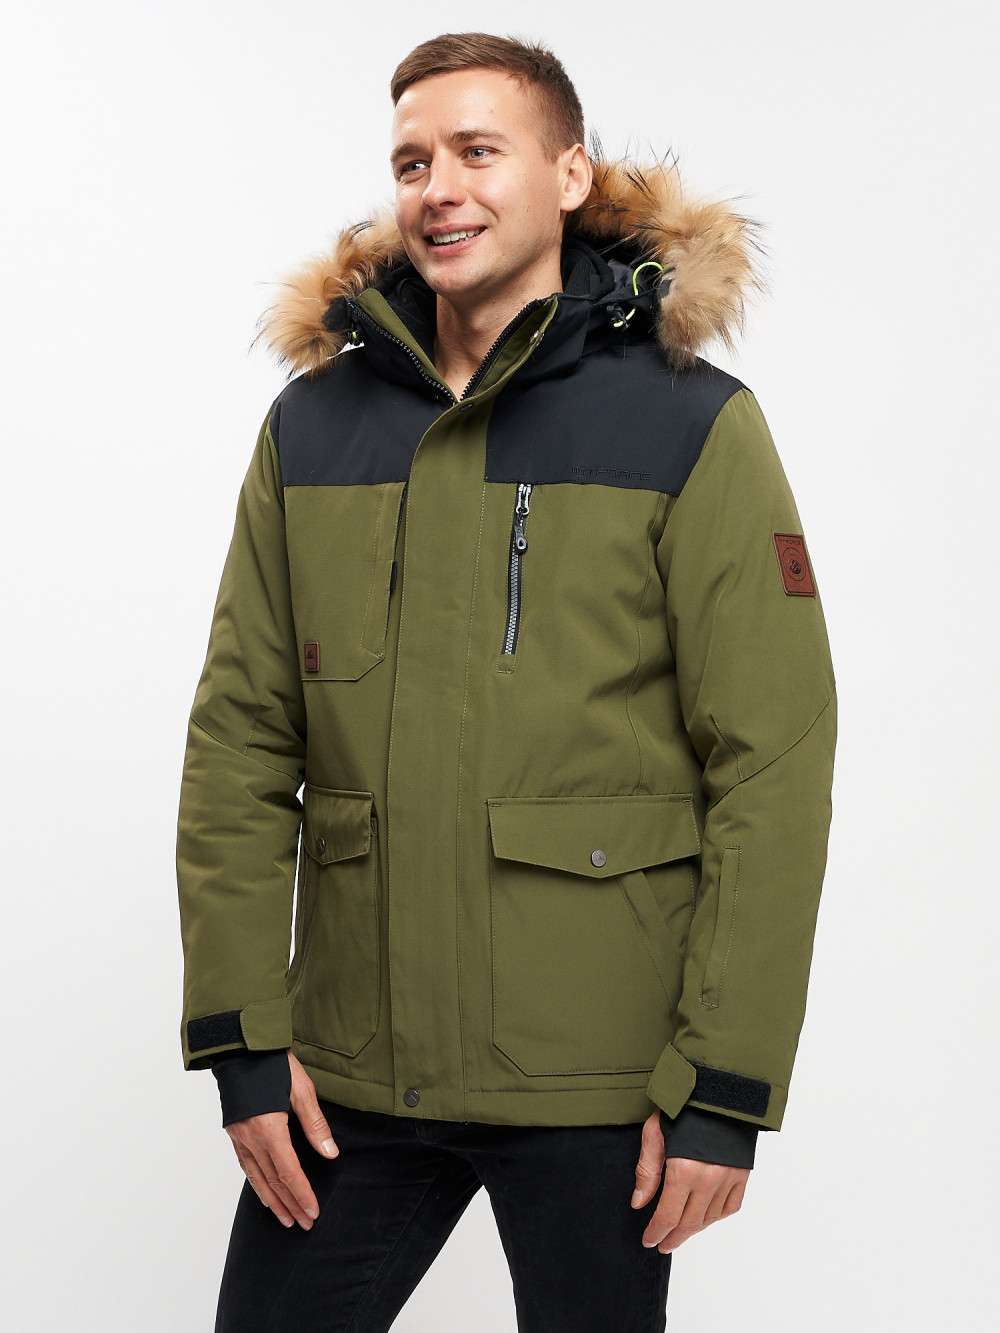 фото Куртка зимняя mtforce мужская удлиненная с мехом цвета хаки 2155-1kh, 50